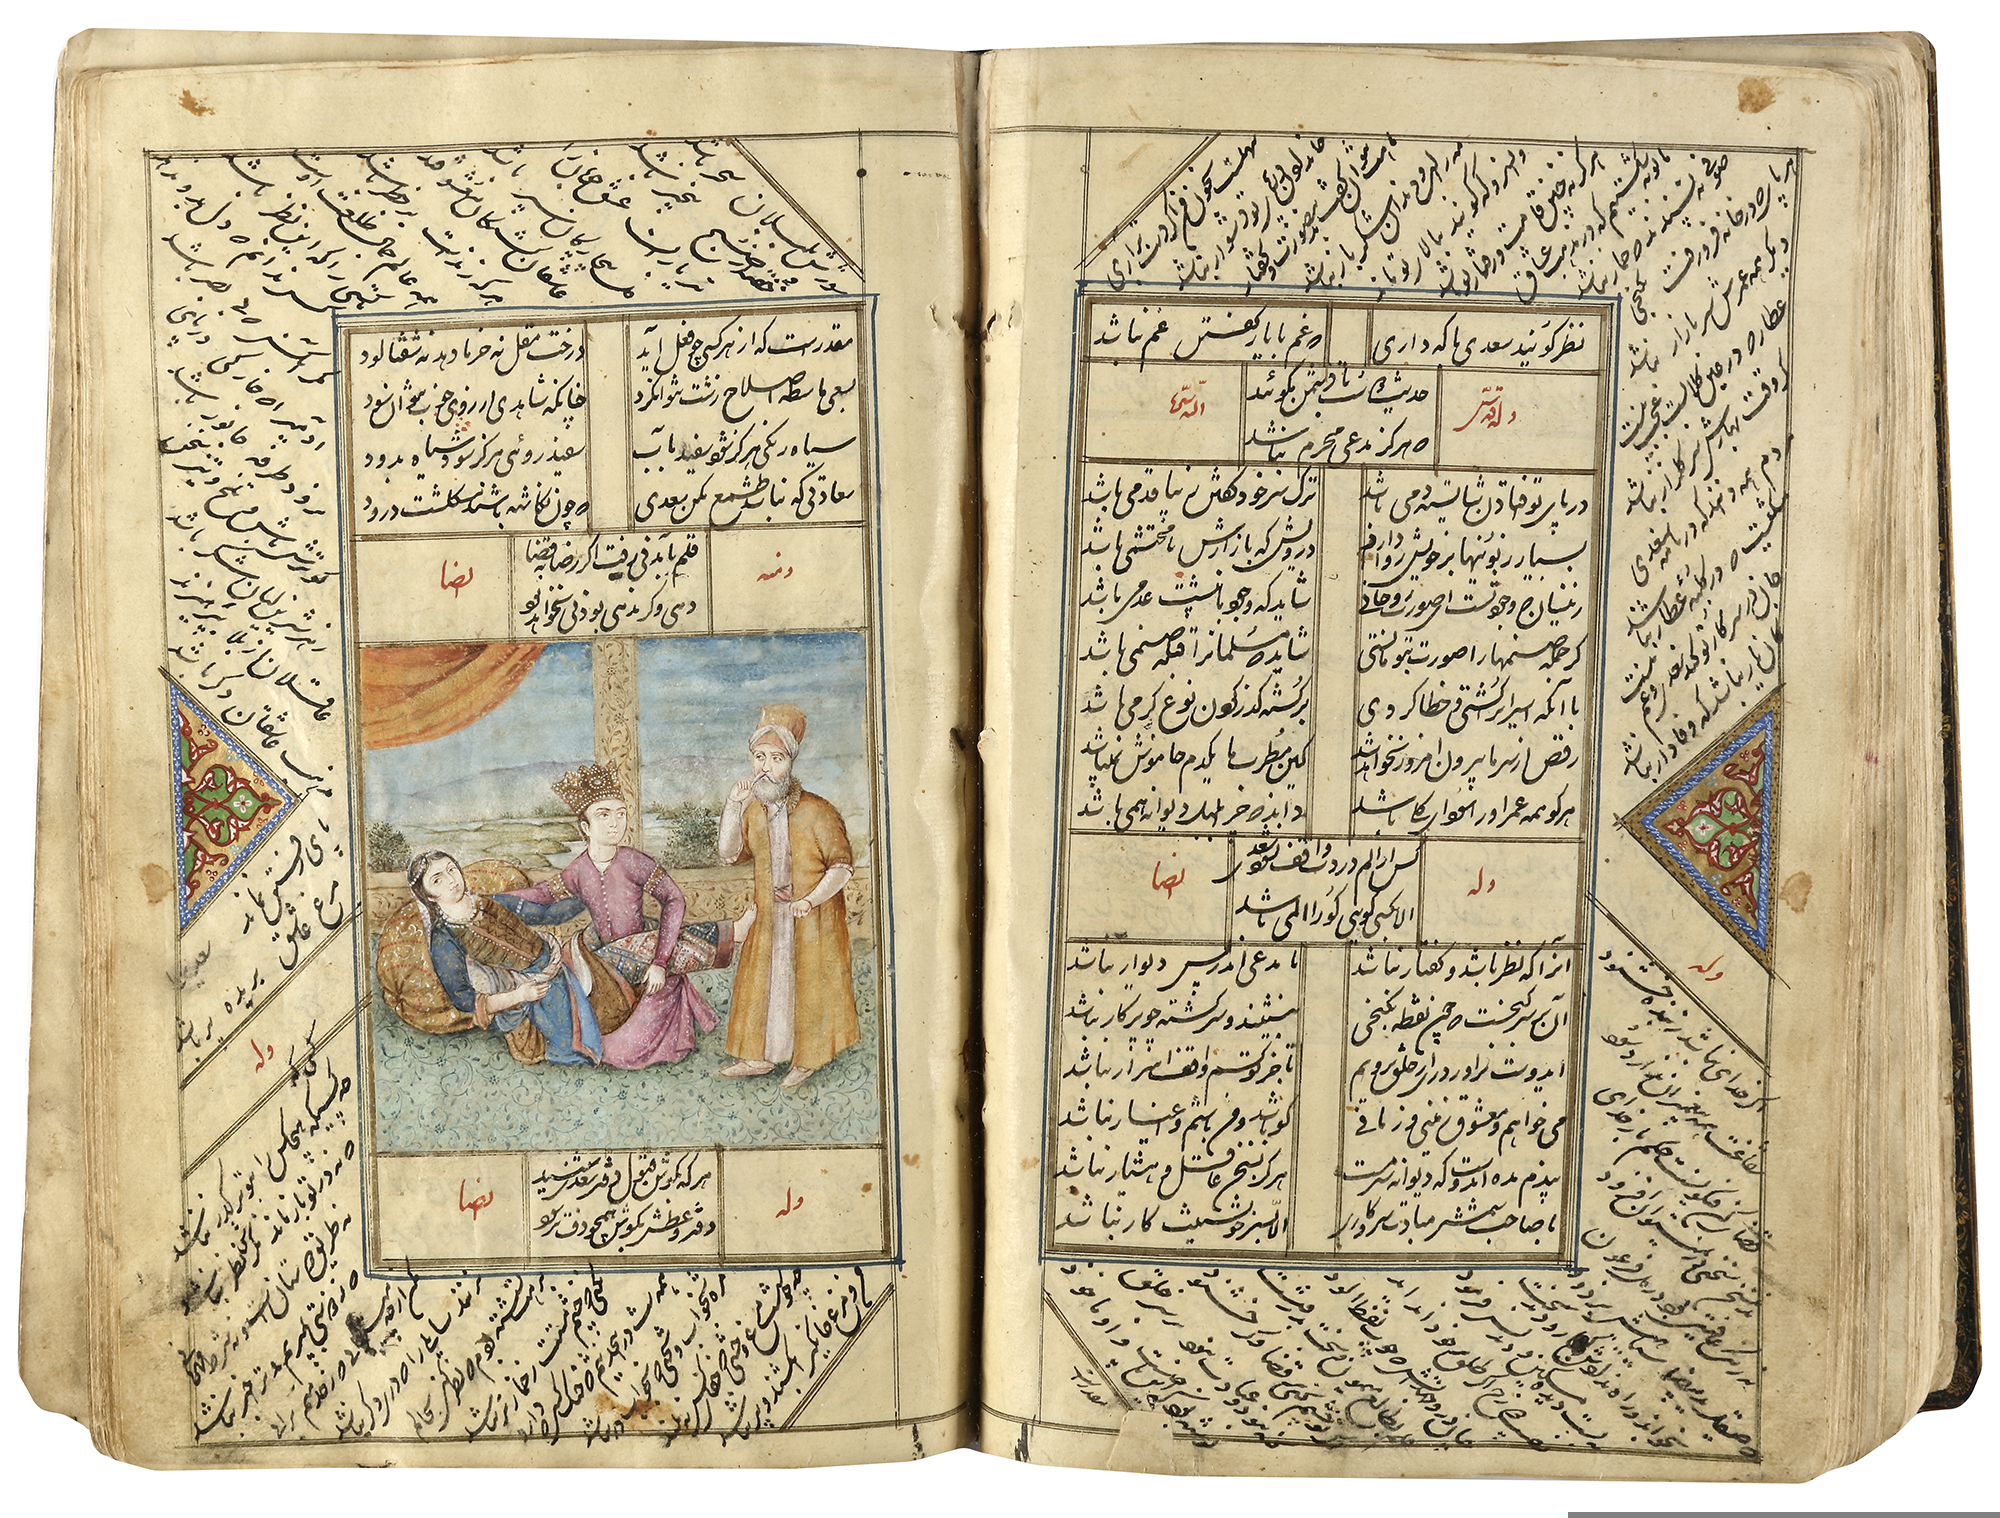 A COMPLETE WORK OF SAADI, KOLIYAT SAADI, PERSIA-QAJAR, 1235 AH/1819 AD - Image 9 of 11